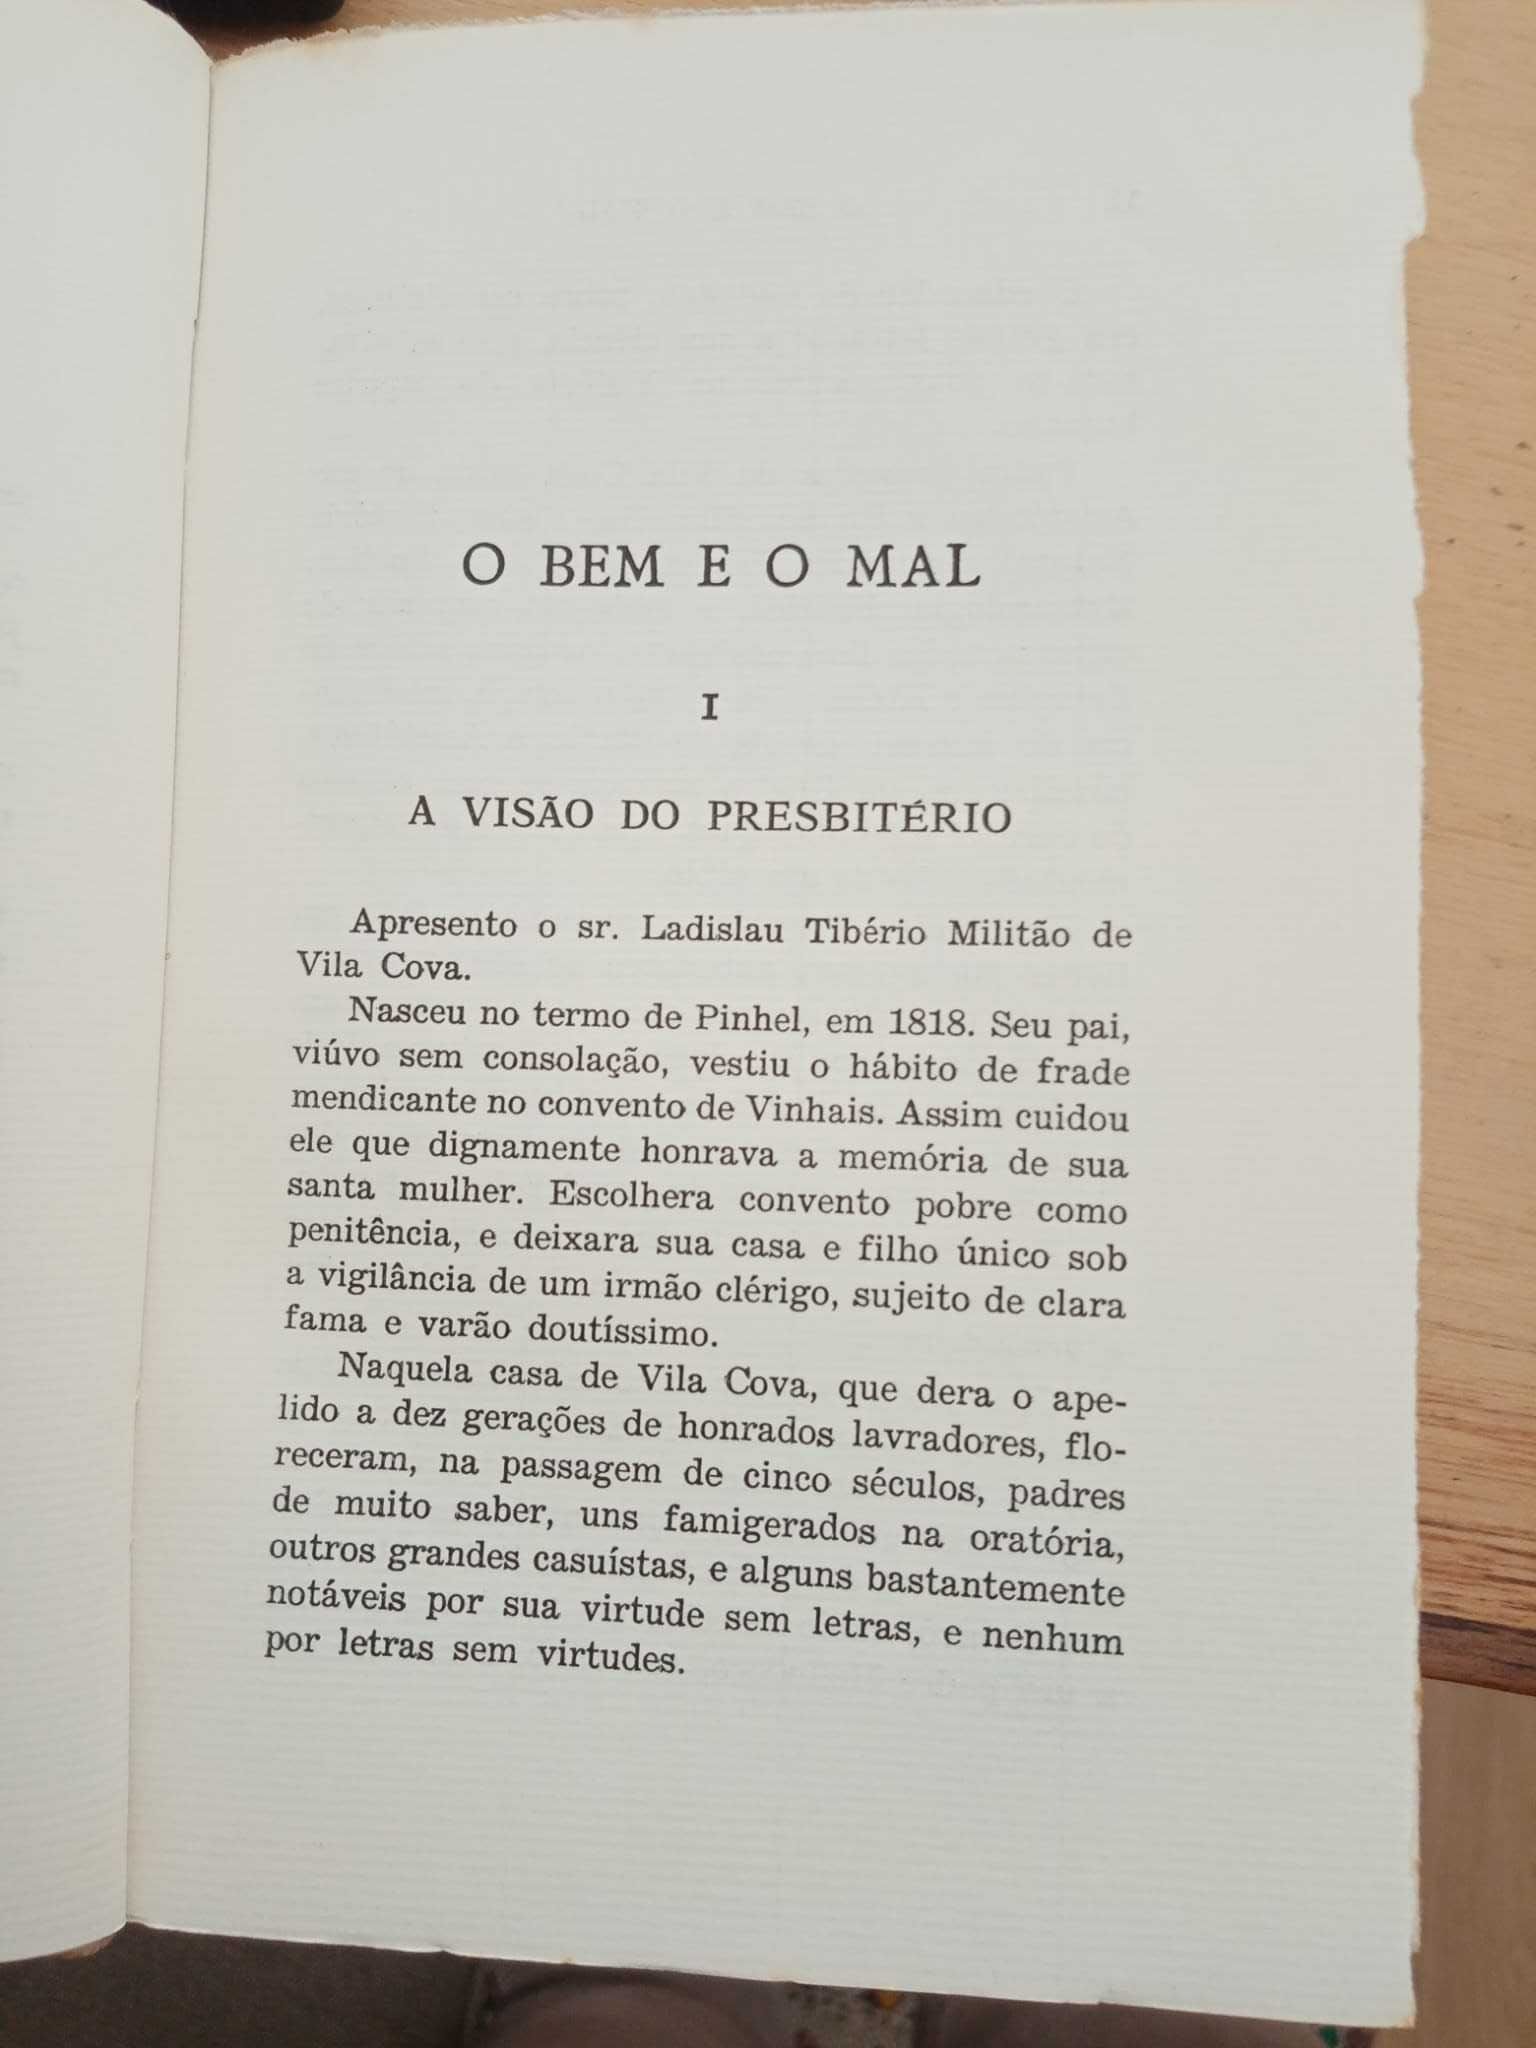 Romance O Bem e O Mal, Camilo Castelo Branco, edição 1971